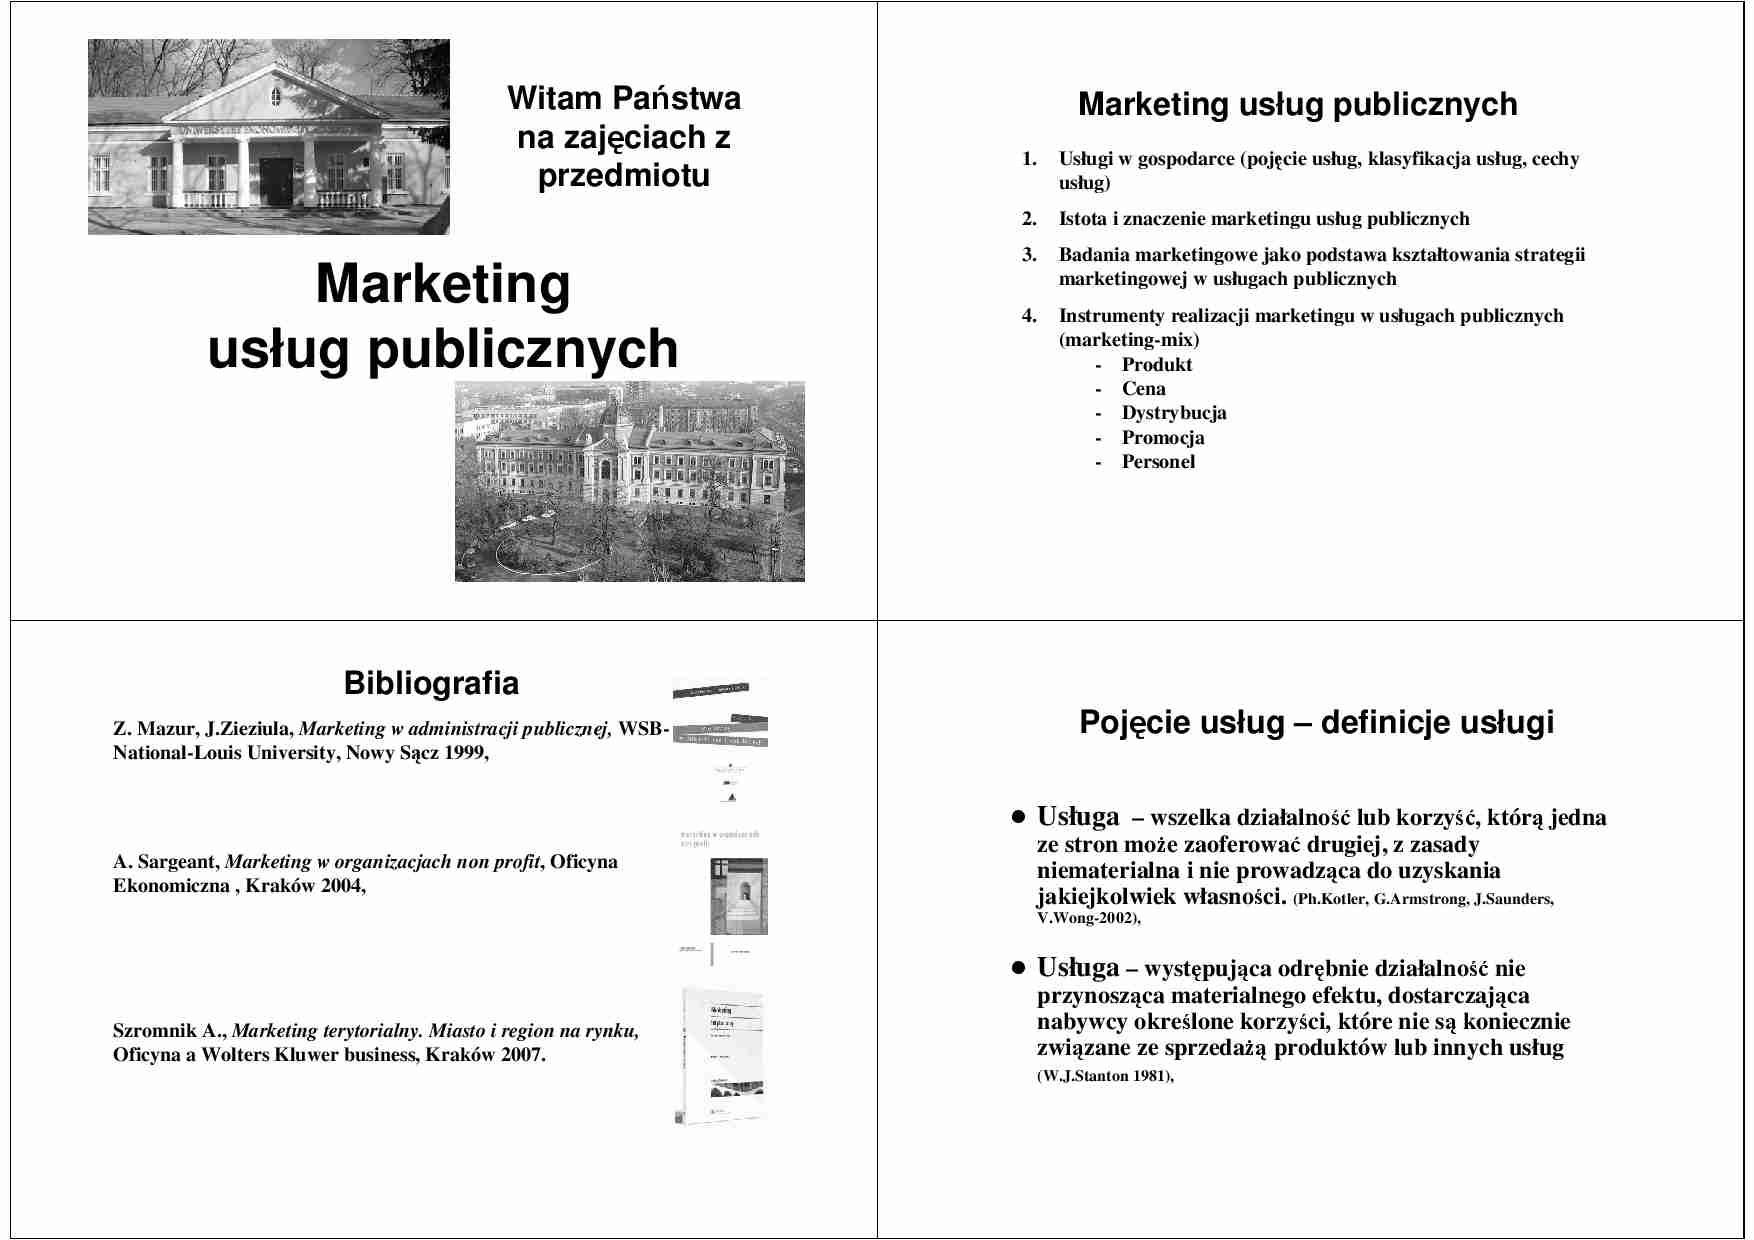 Wprowadzenie do marketingu usług publicznych cz.2 - strona 1